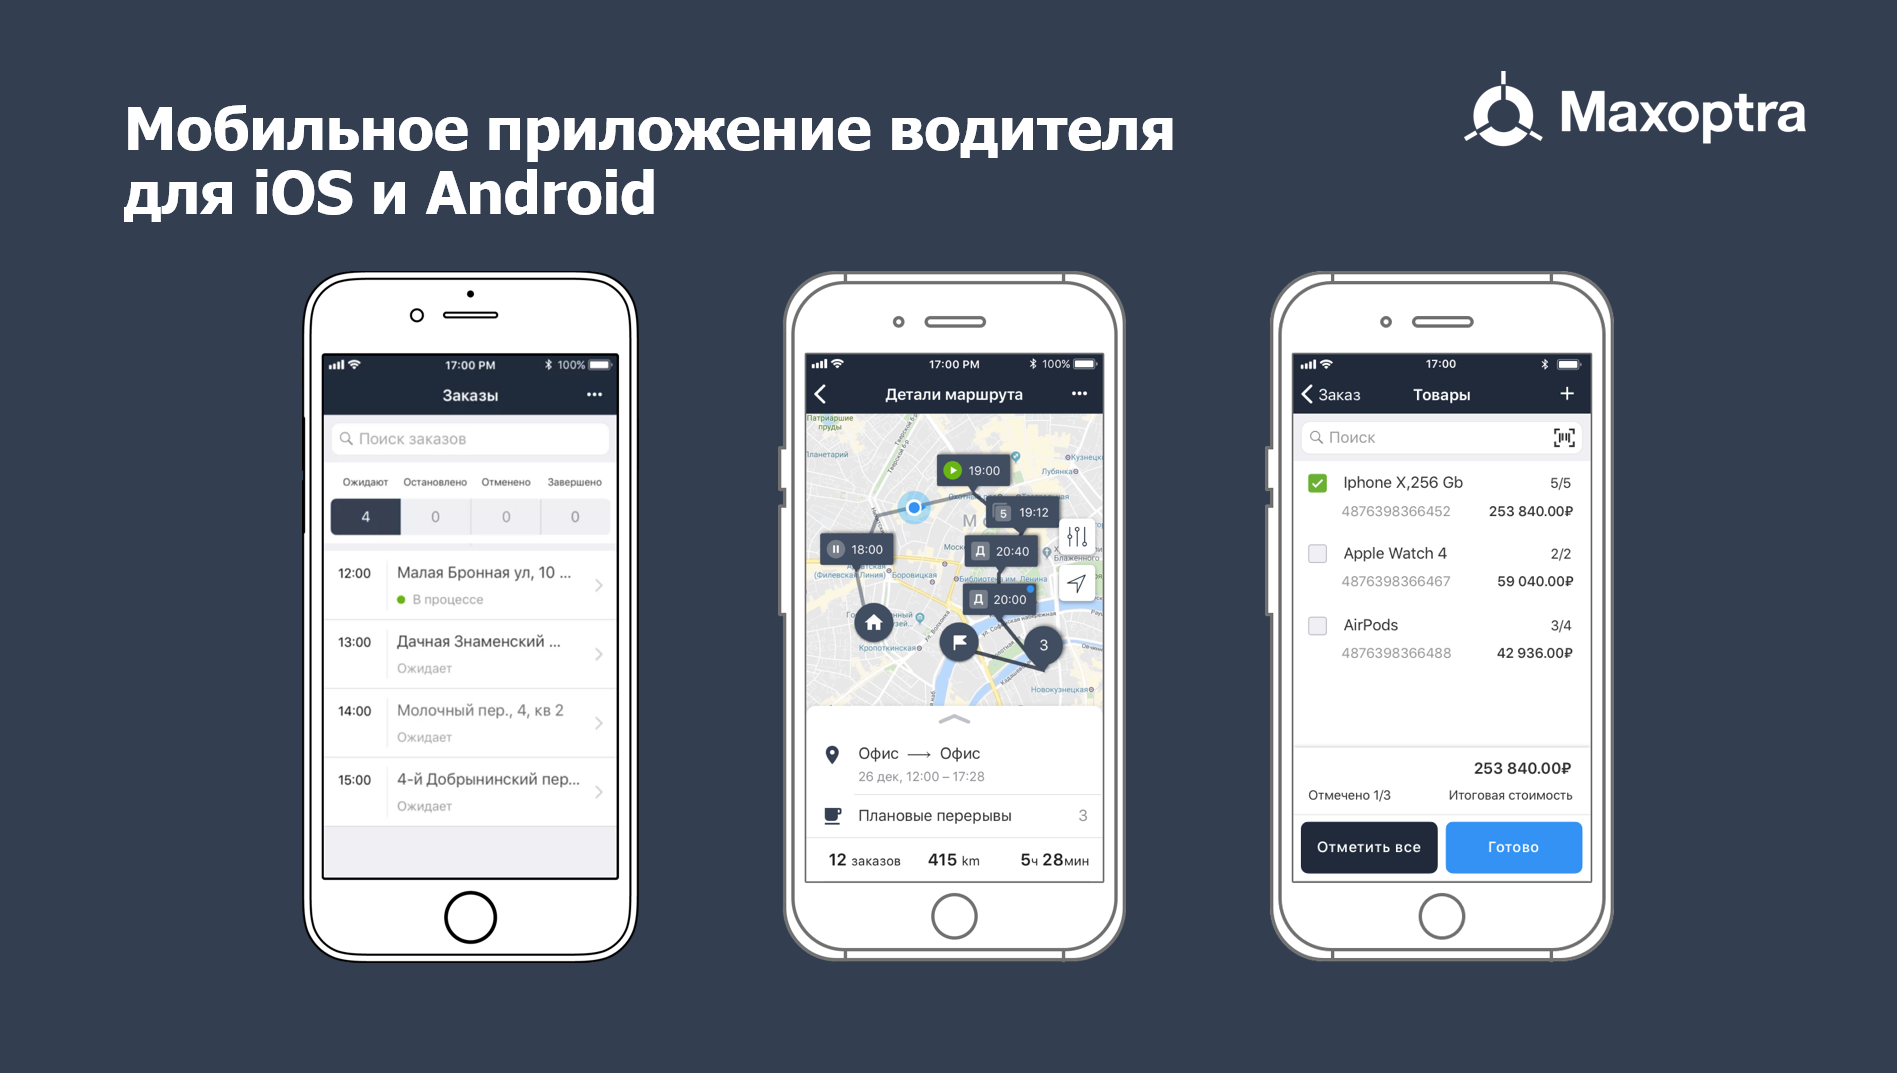 Getapss приложение. Максоптра приложение. Maxoptra Интерфейс программа. Мобильное приложение водителя. Окно мобильного приложения.